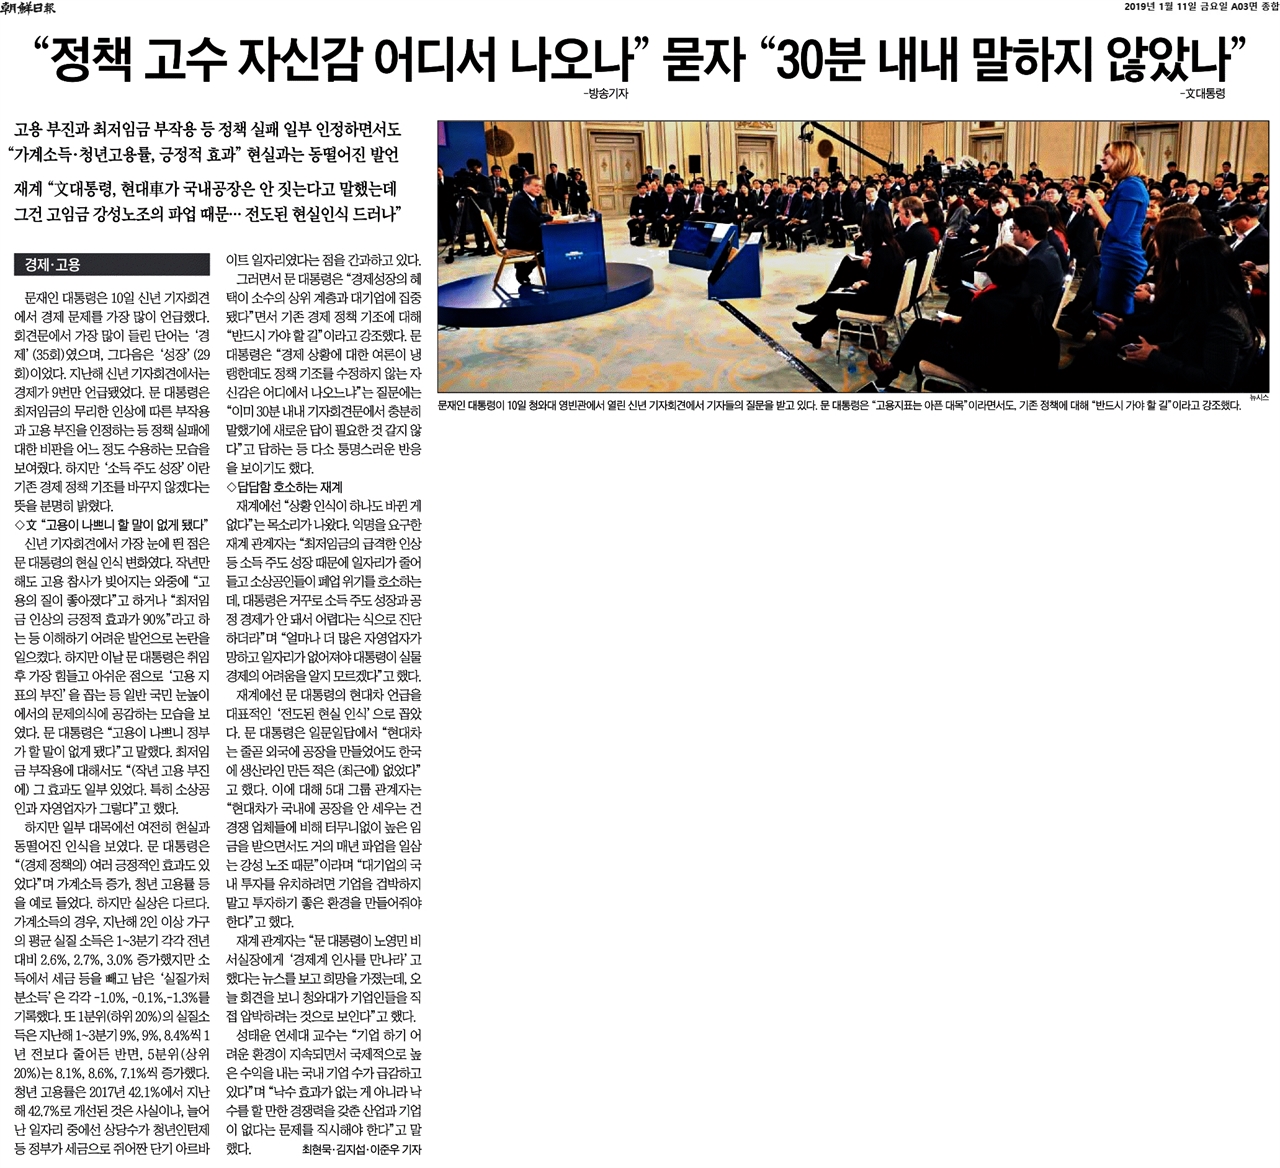 조선일보 2019년 1월 11일자